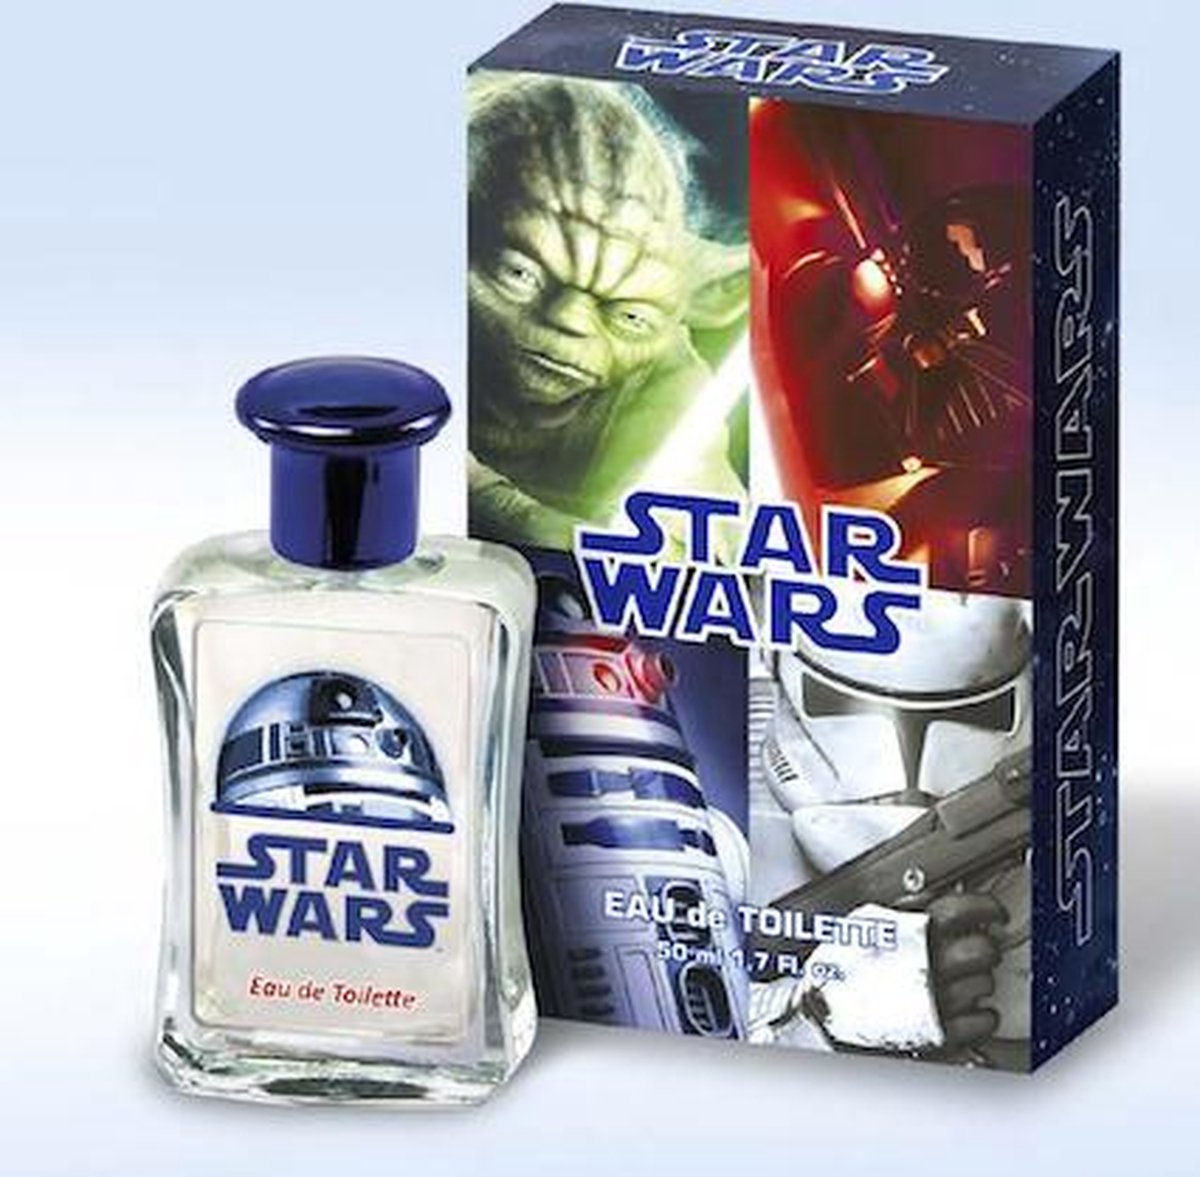 STAR WARS - Eau de Toilette 50ml - Star Wars